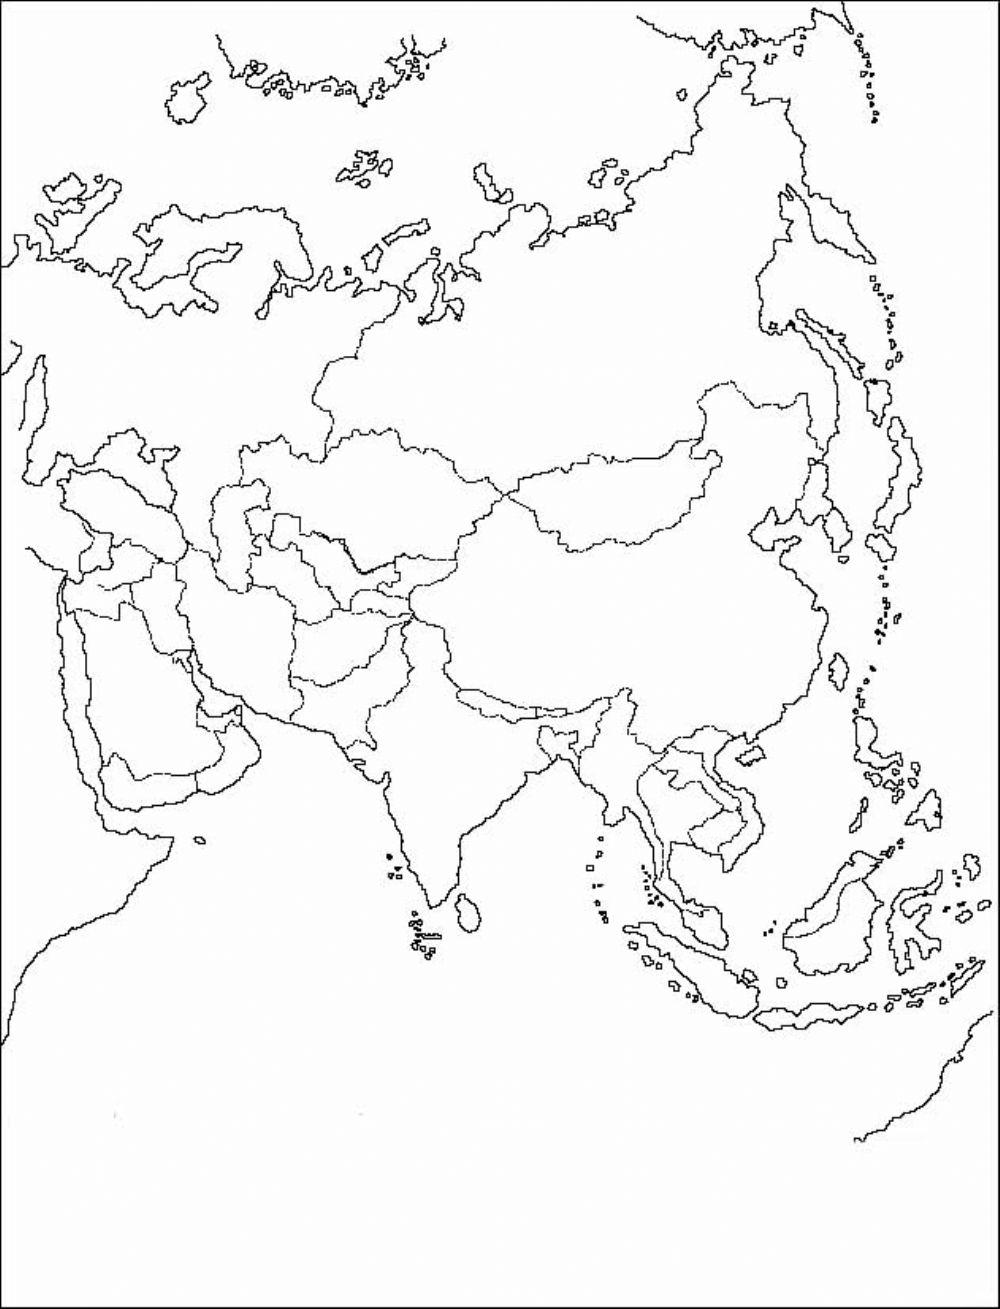 Reparto colonial Asia (parcial)